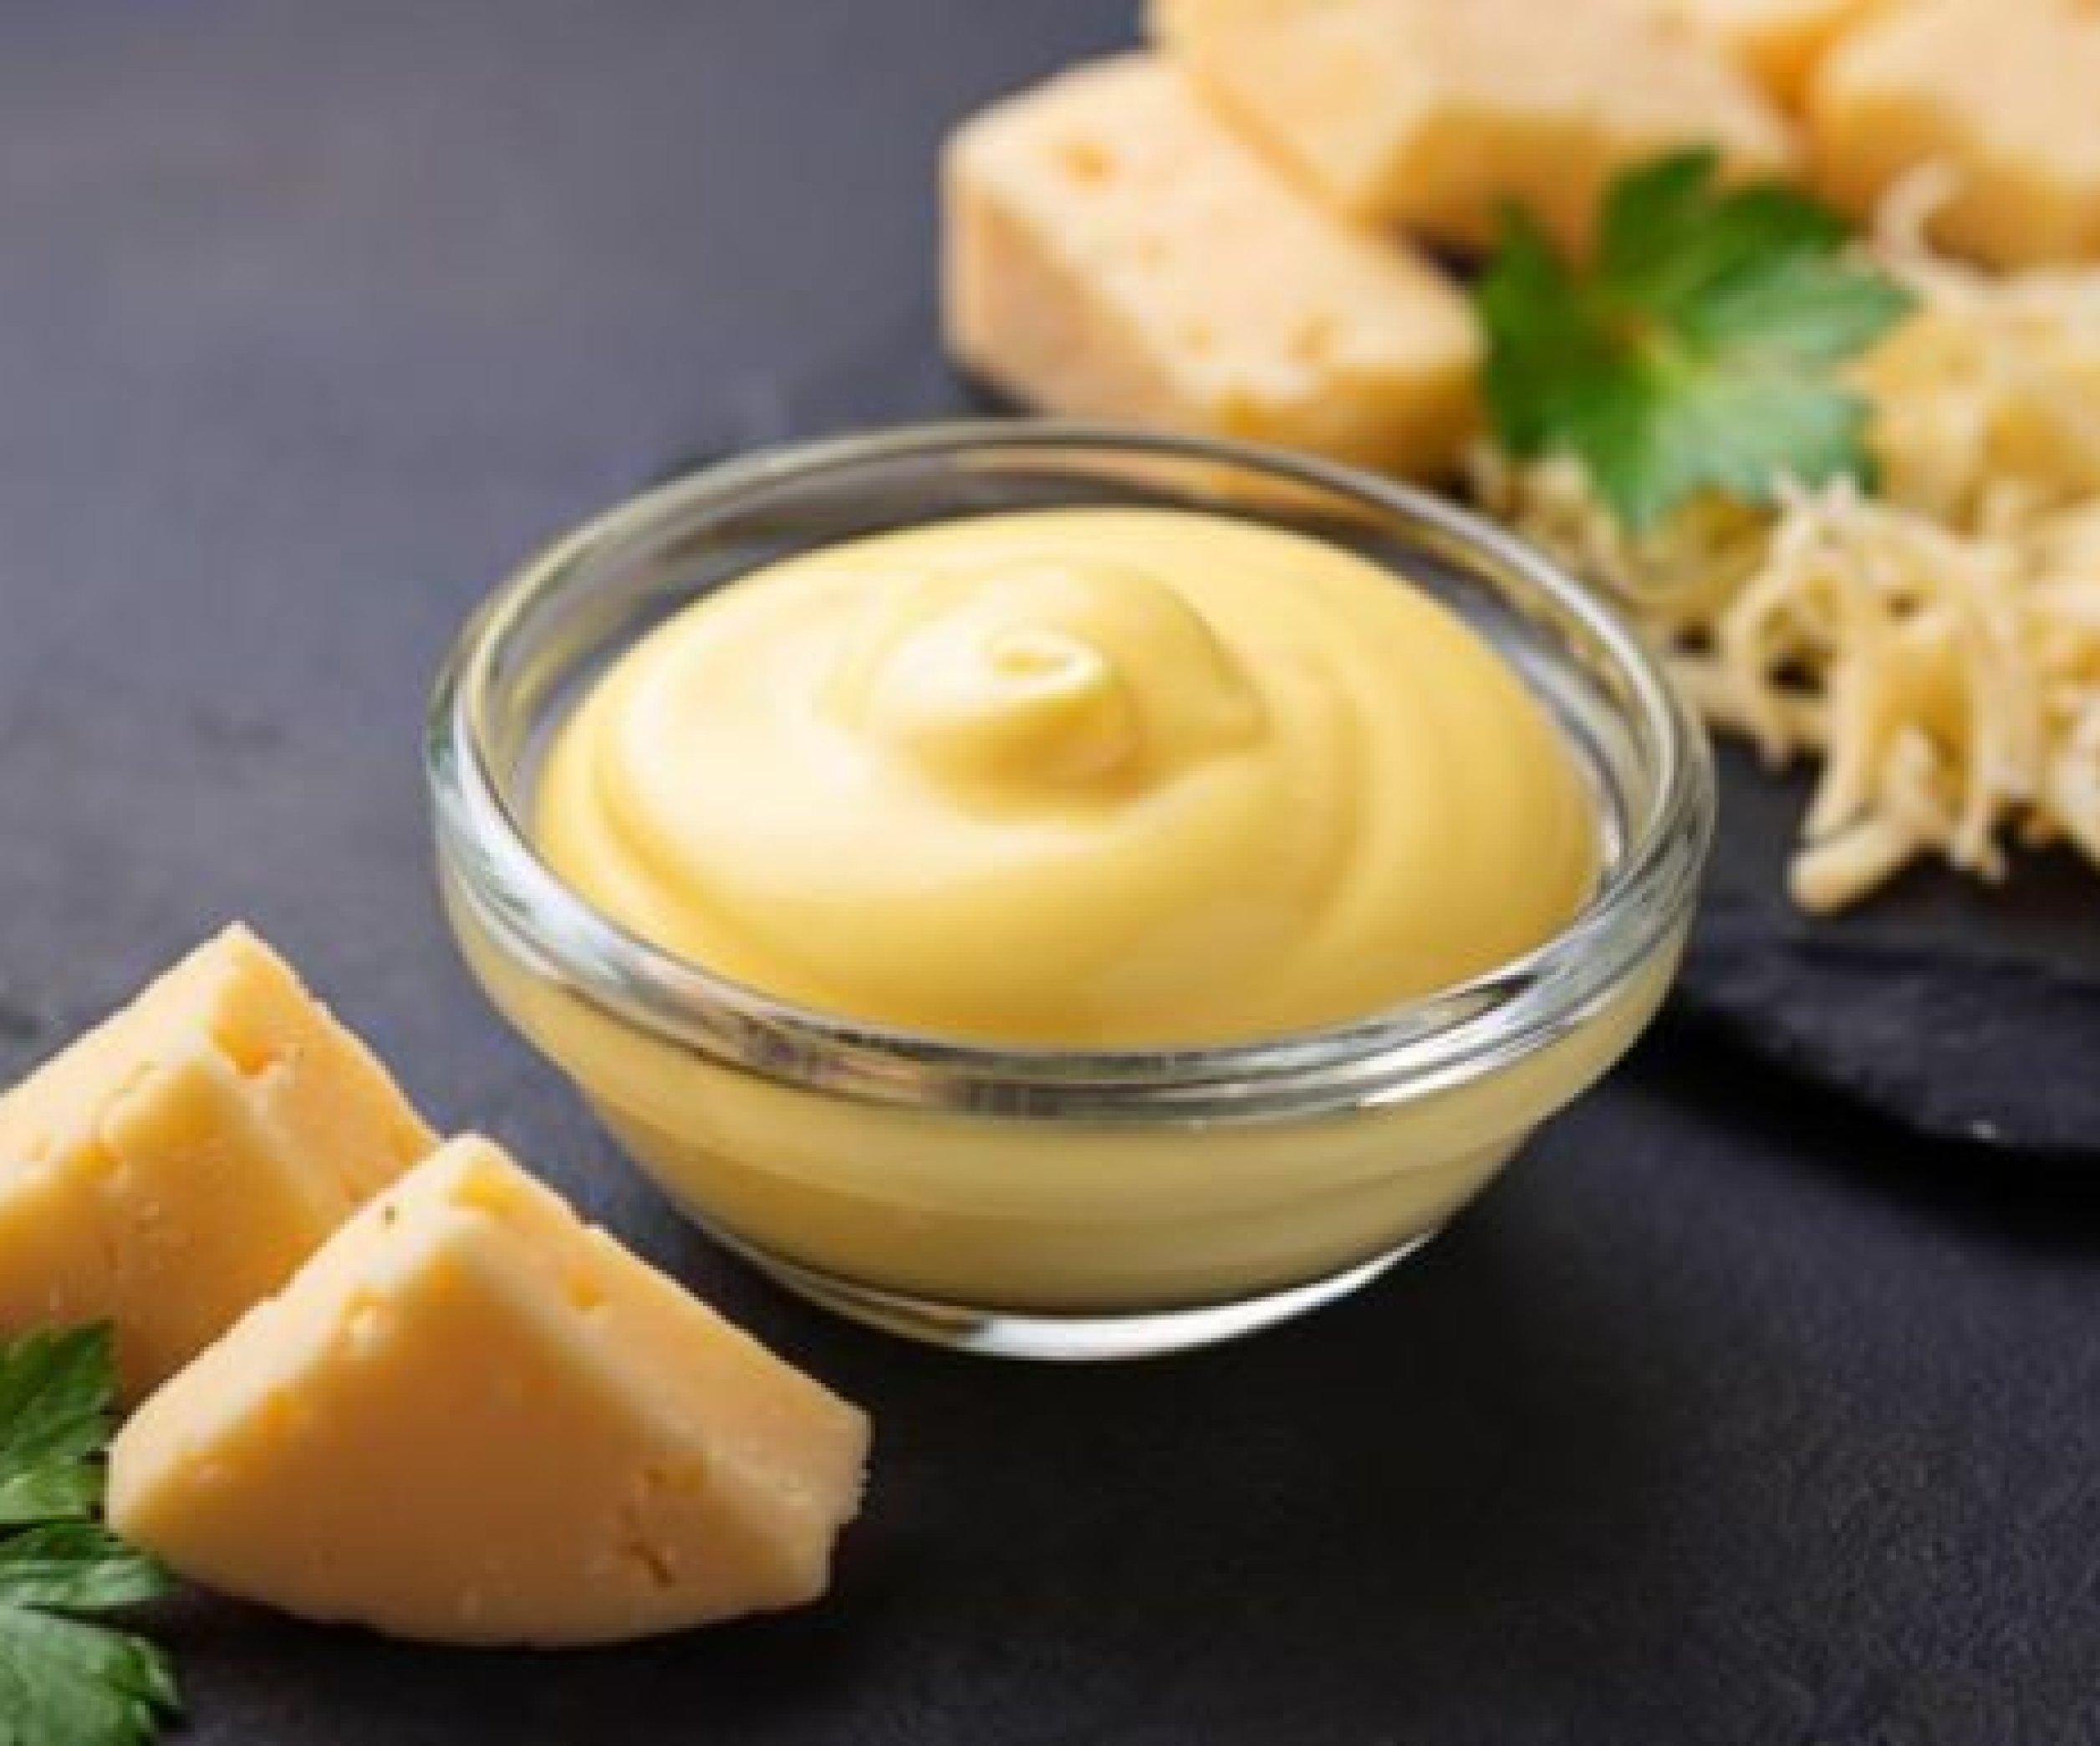 Сырный соус как в макдональдсе - рецепт с фото на steklorez69.ru